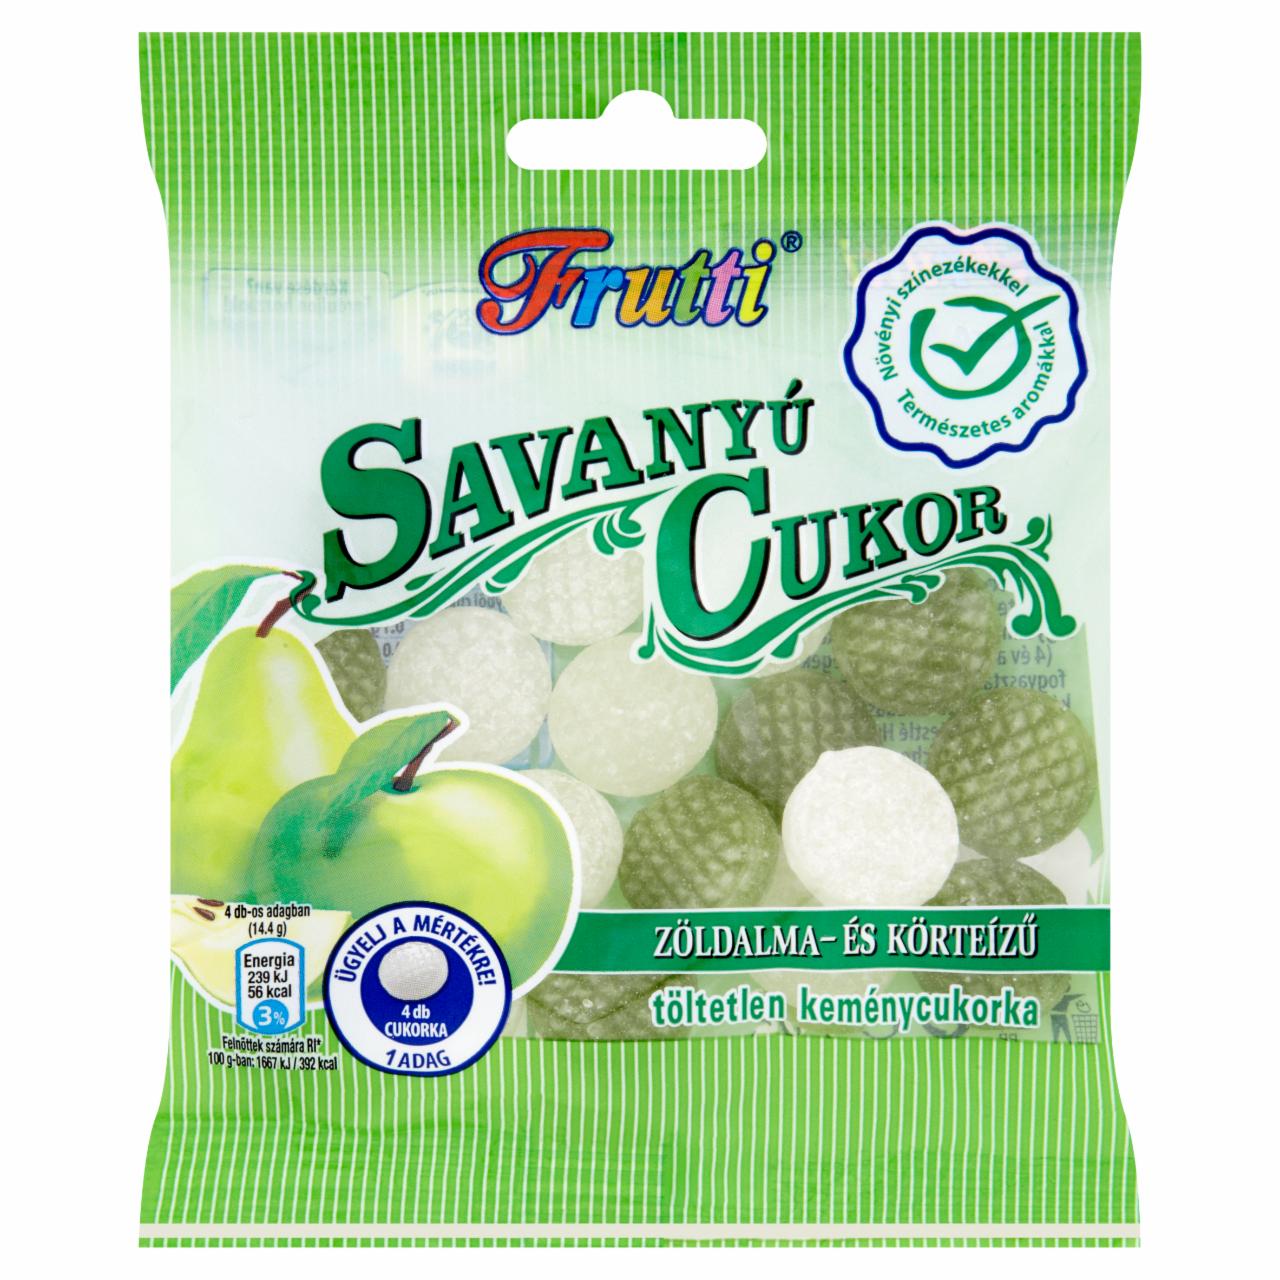 Képek - Frutti Savanyú Cukor zöldalma- és körteízű töltetlen keménycukorka 70 g